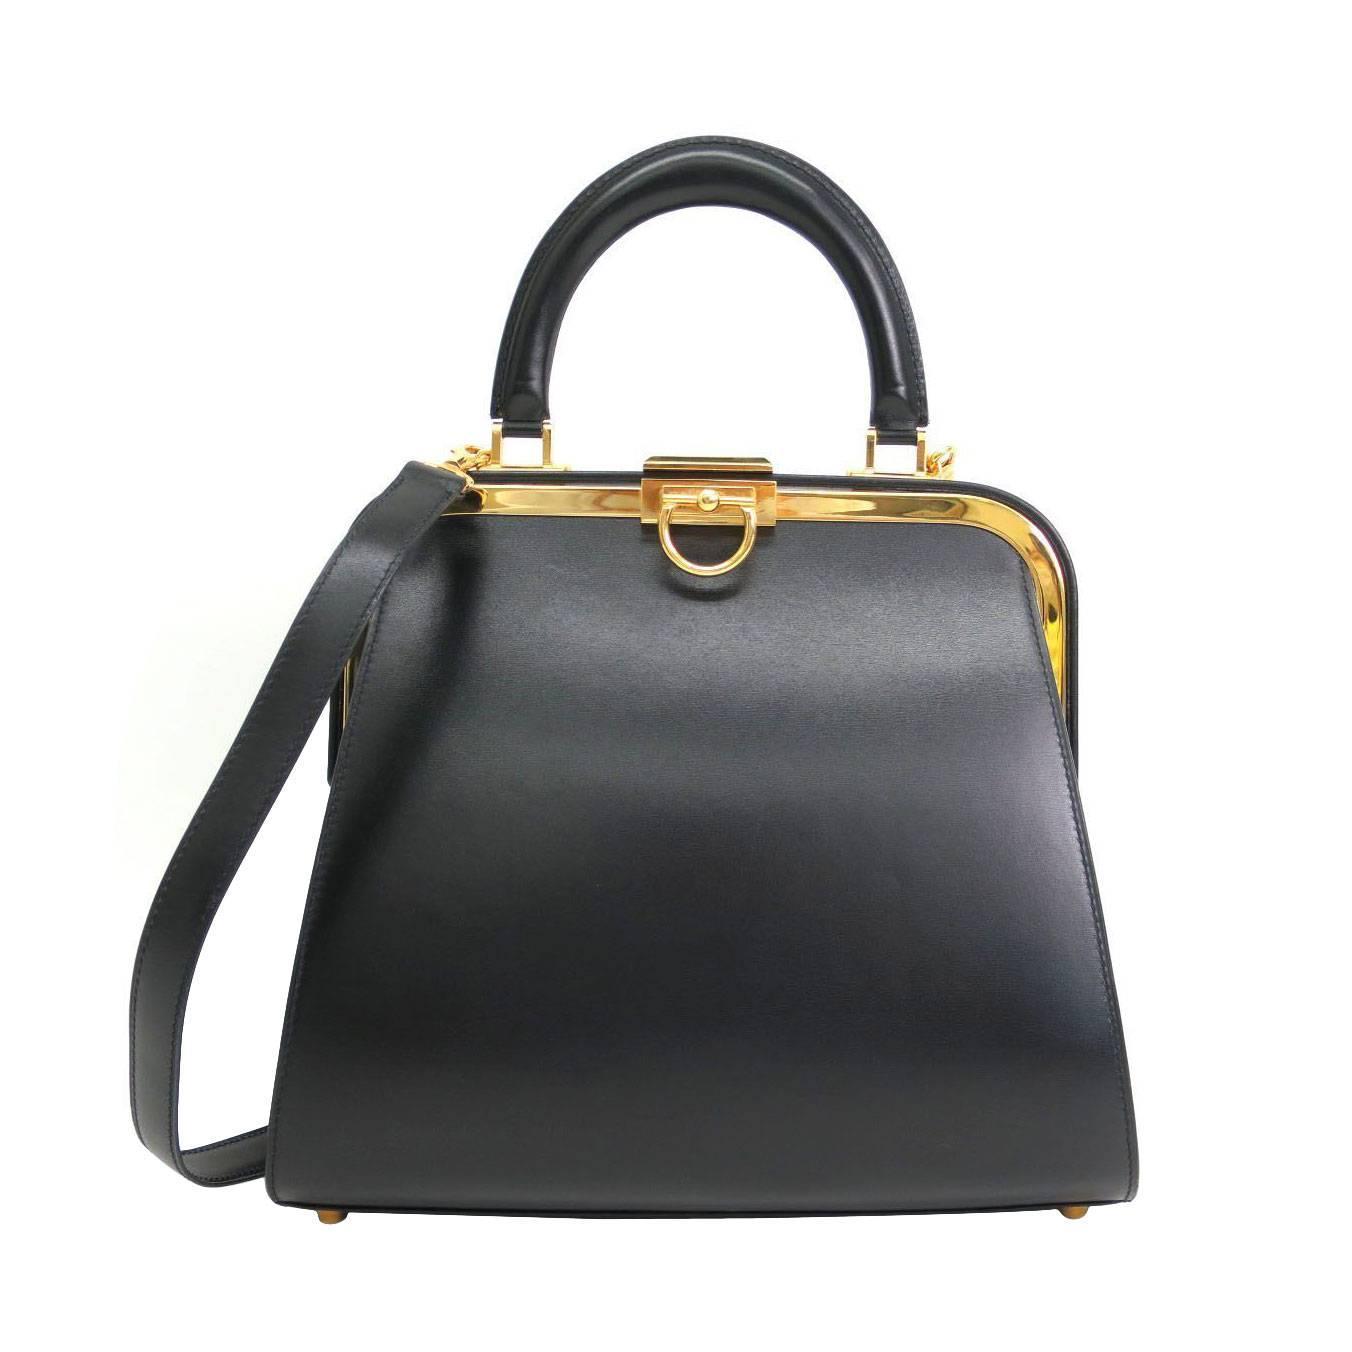 Christian Dior Ladylike Black Leather Gold Hardware Satchel Shoulder Bag at 1stdibs